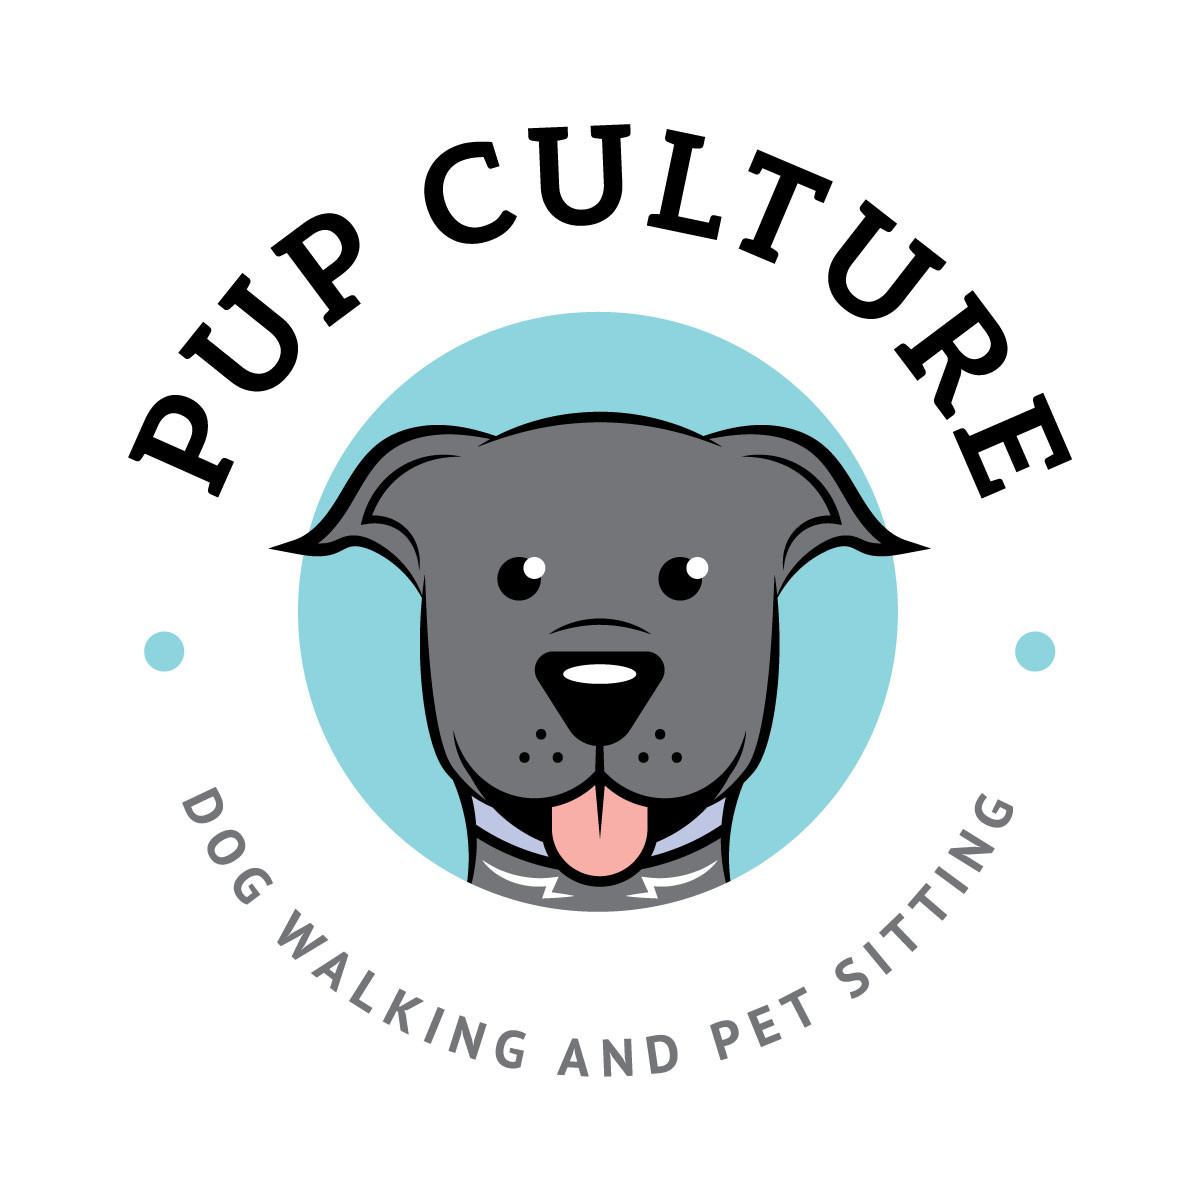 Pup culture